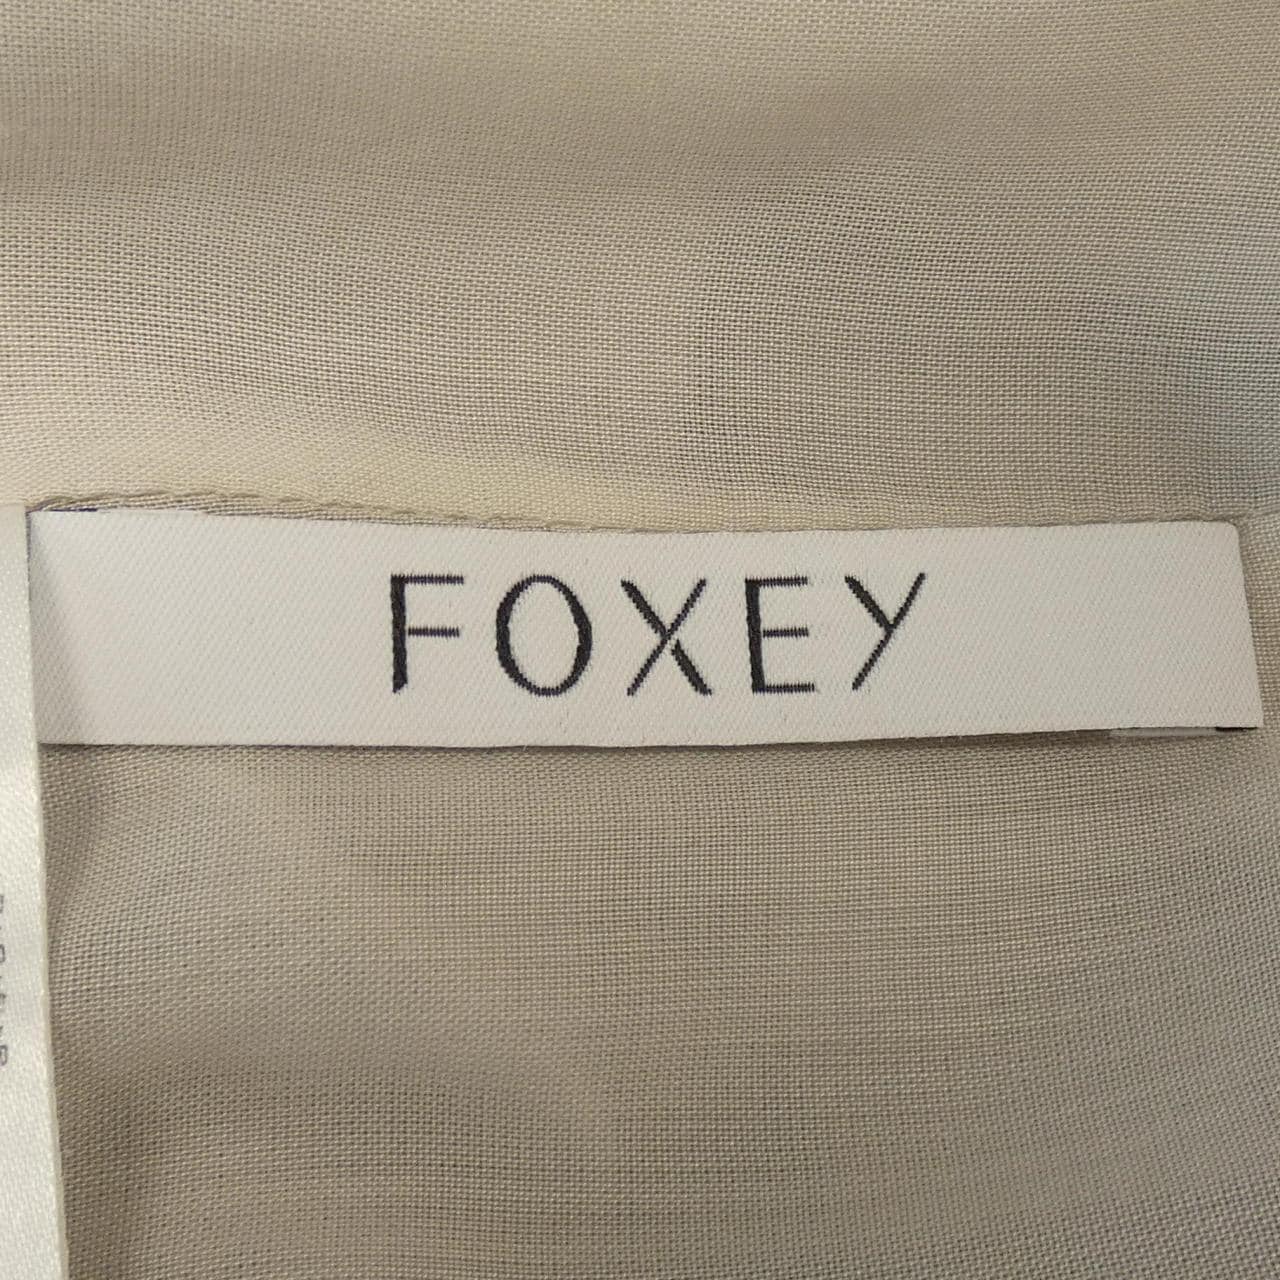 Foxy FOXEY dress